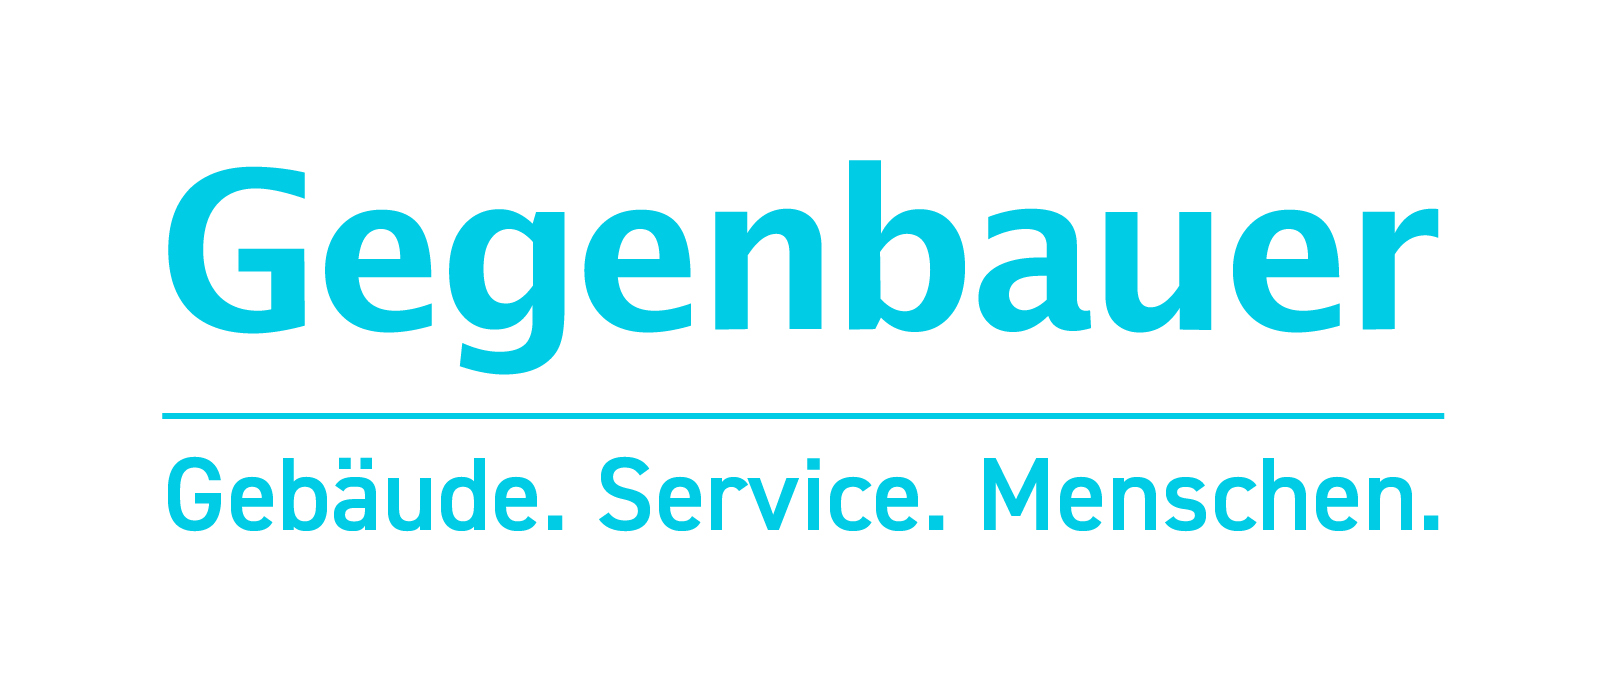 Gegenbauer logo neu 4c